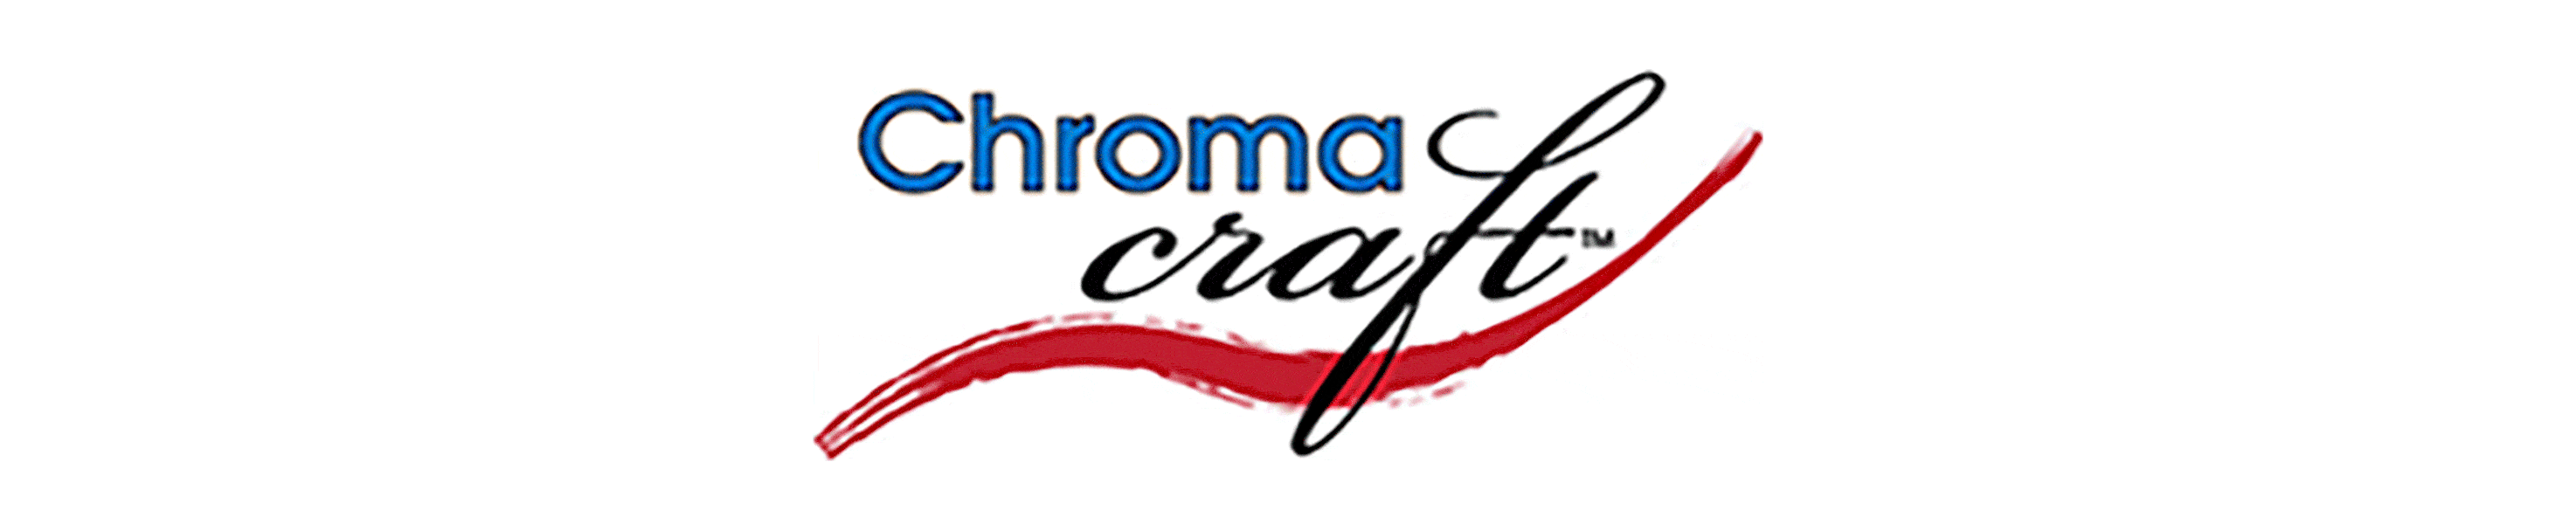 Chroma Craft